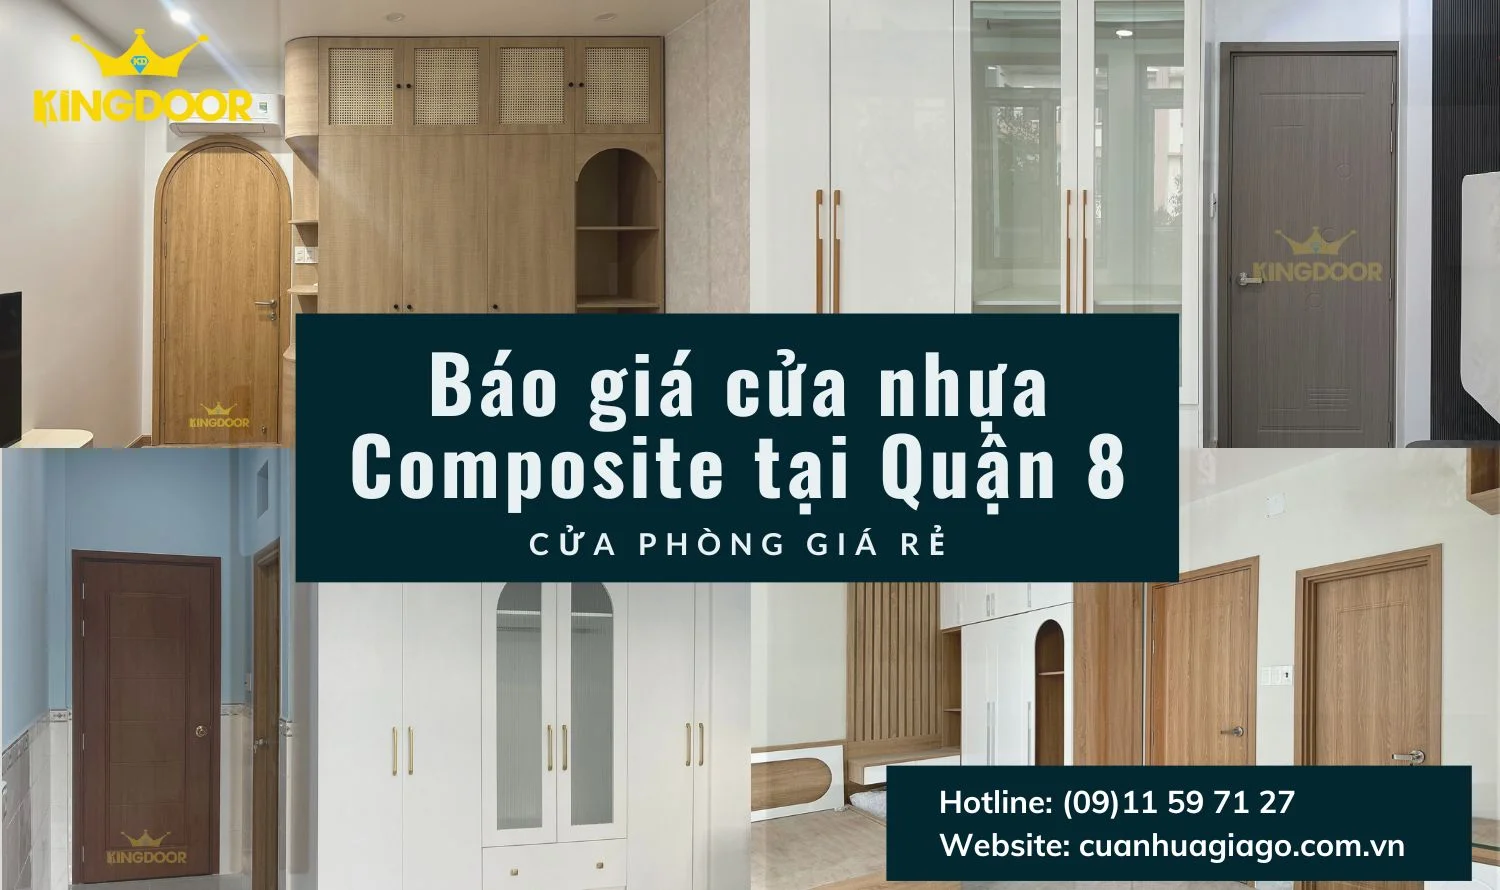 AVT-Bao-gia-cua-nhua-Composite-tai-Quan-8